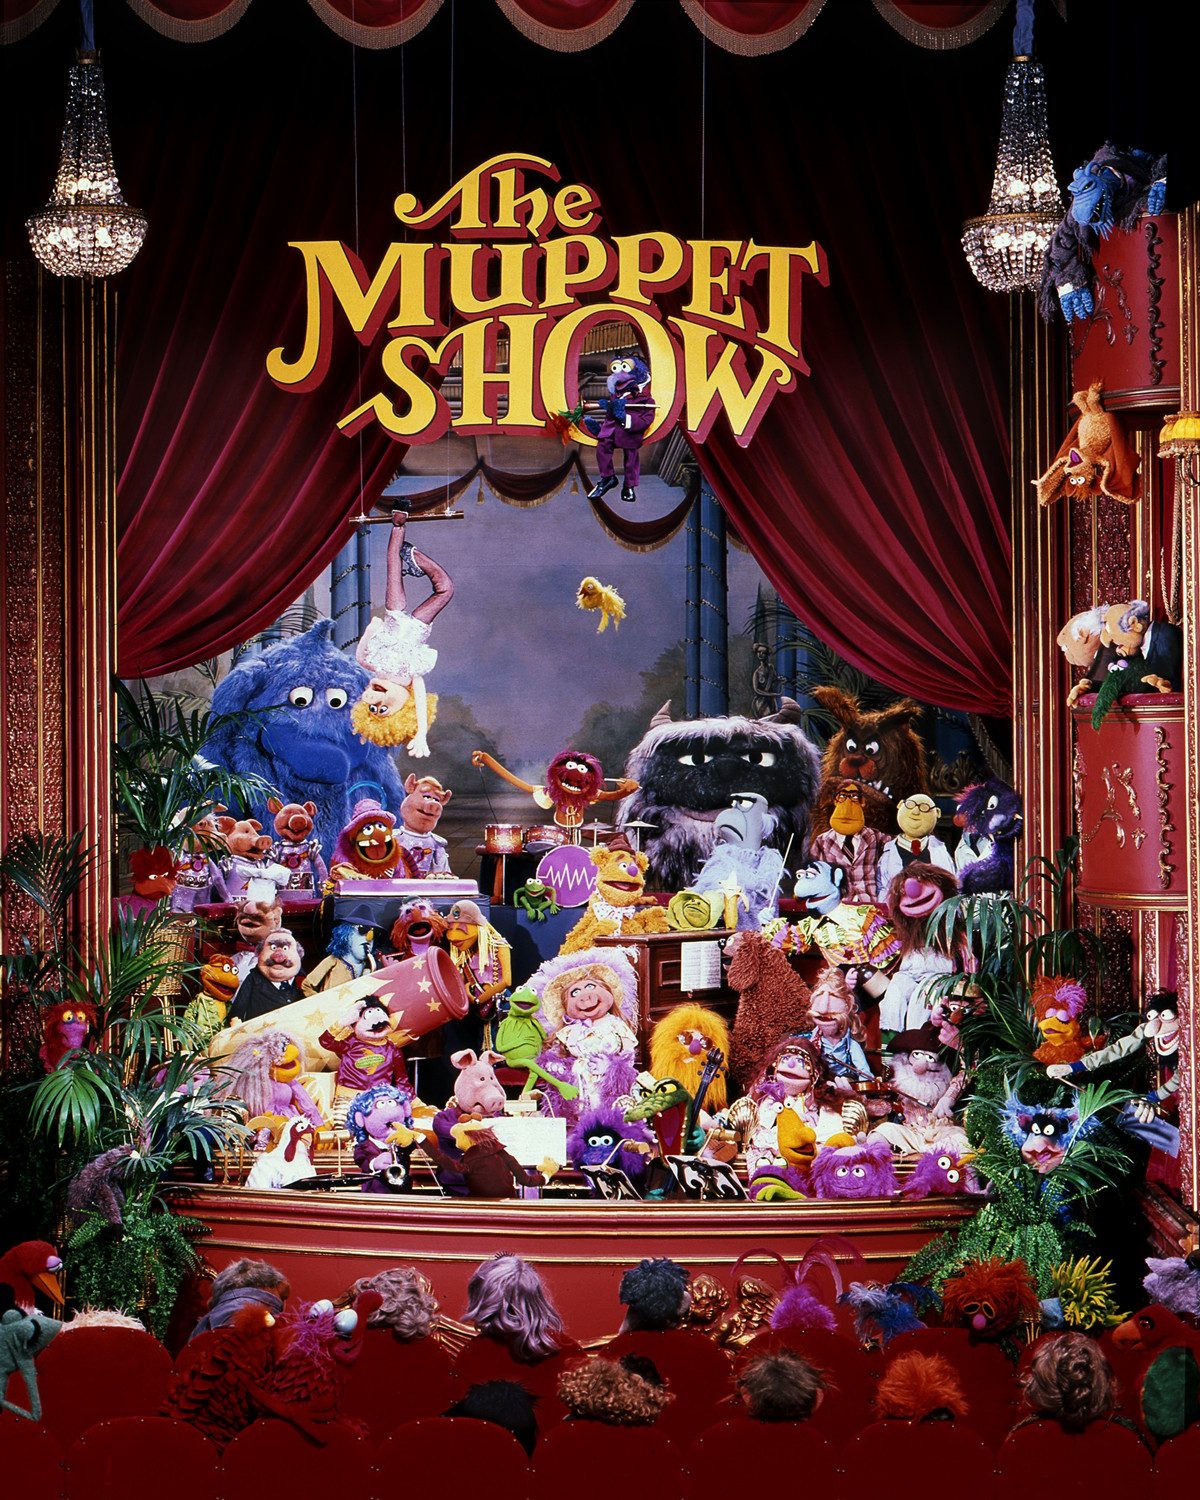 il cast completo dello spettacolo dei Muppet